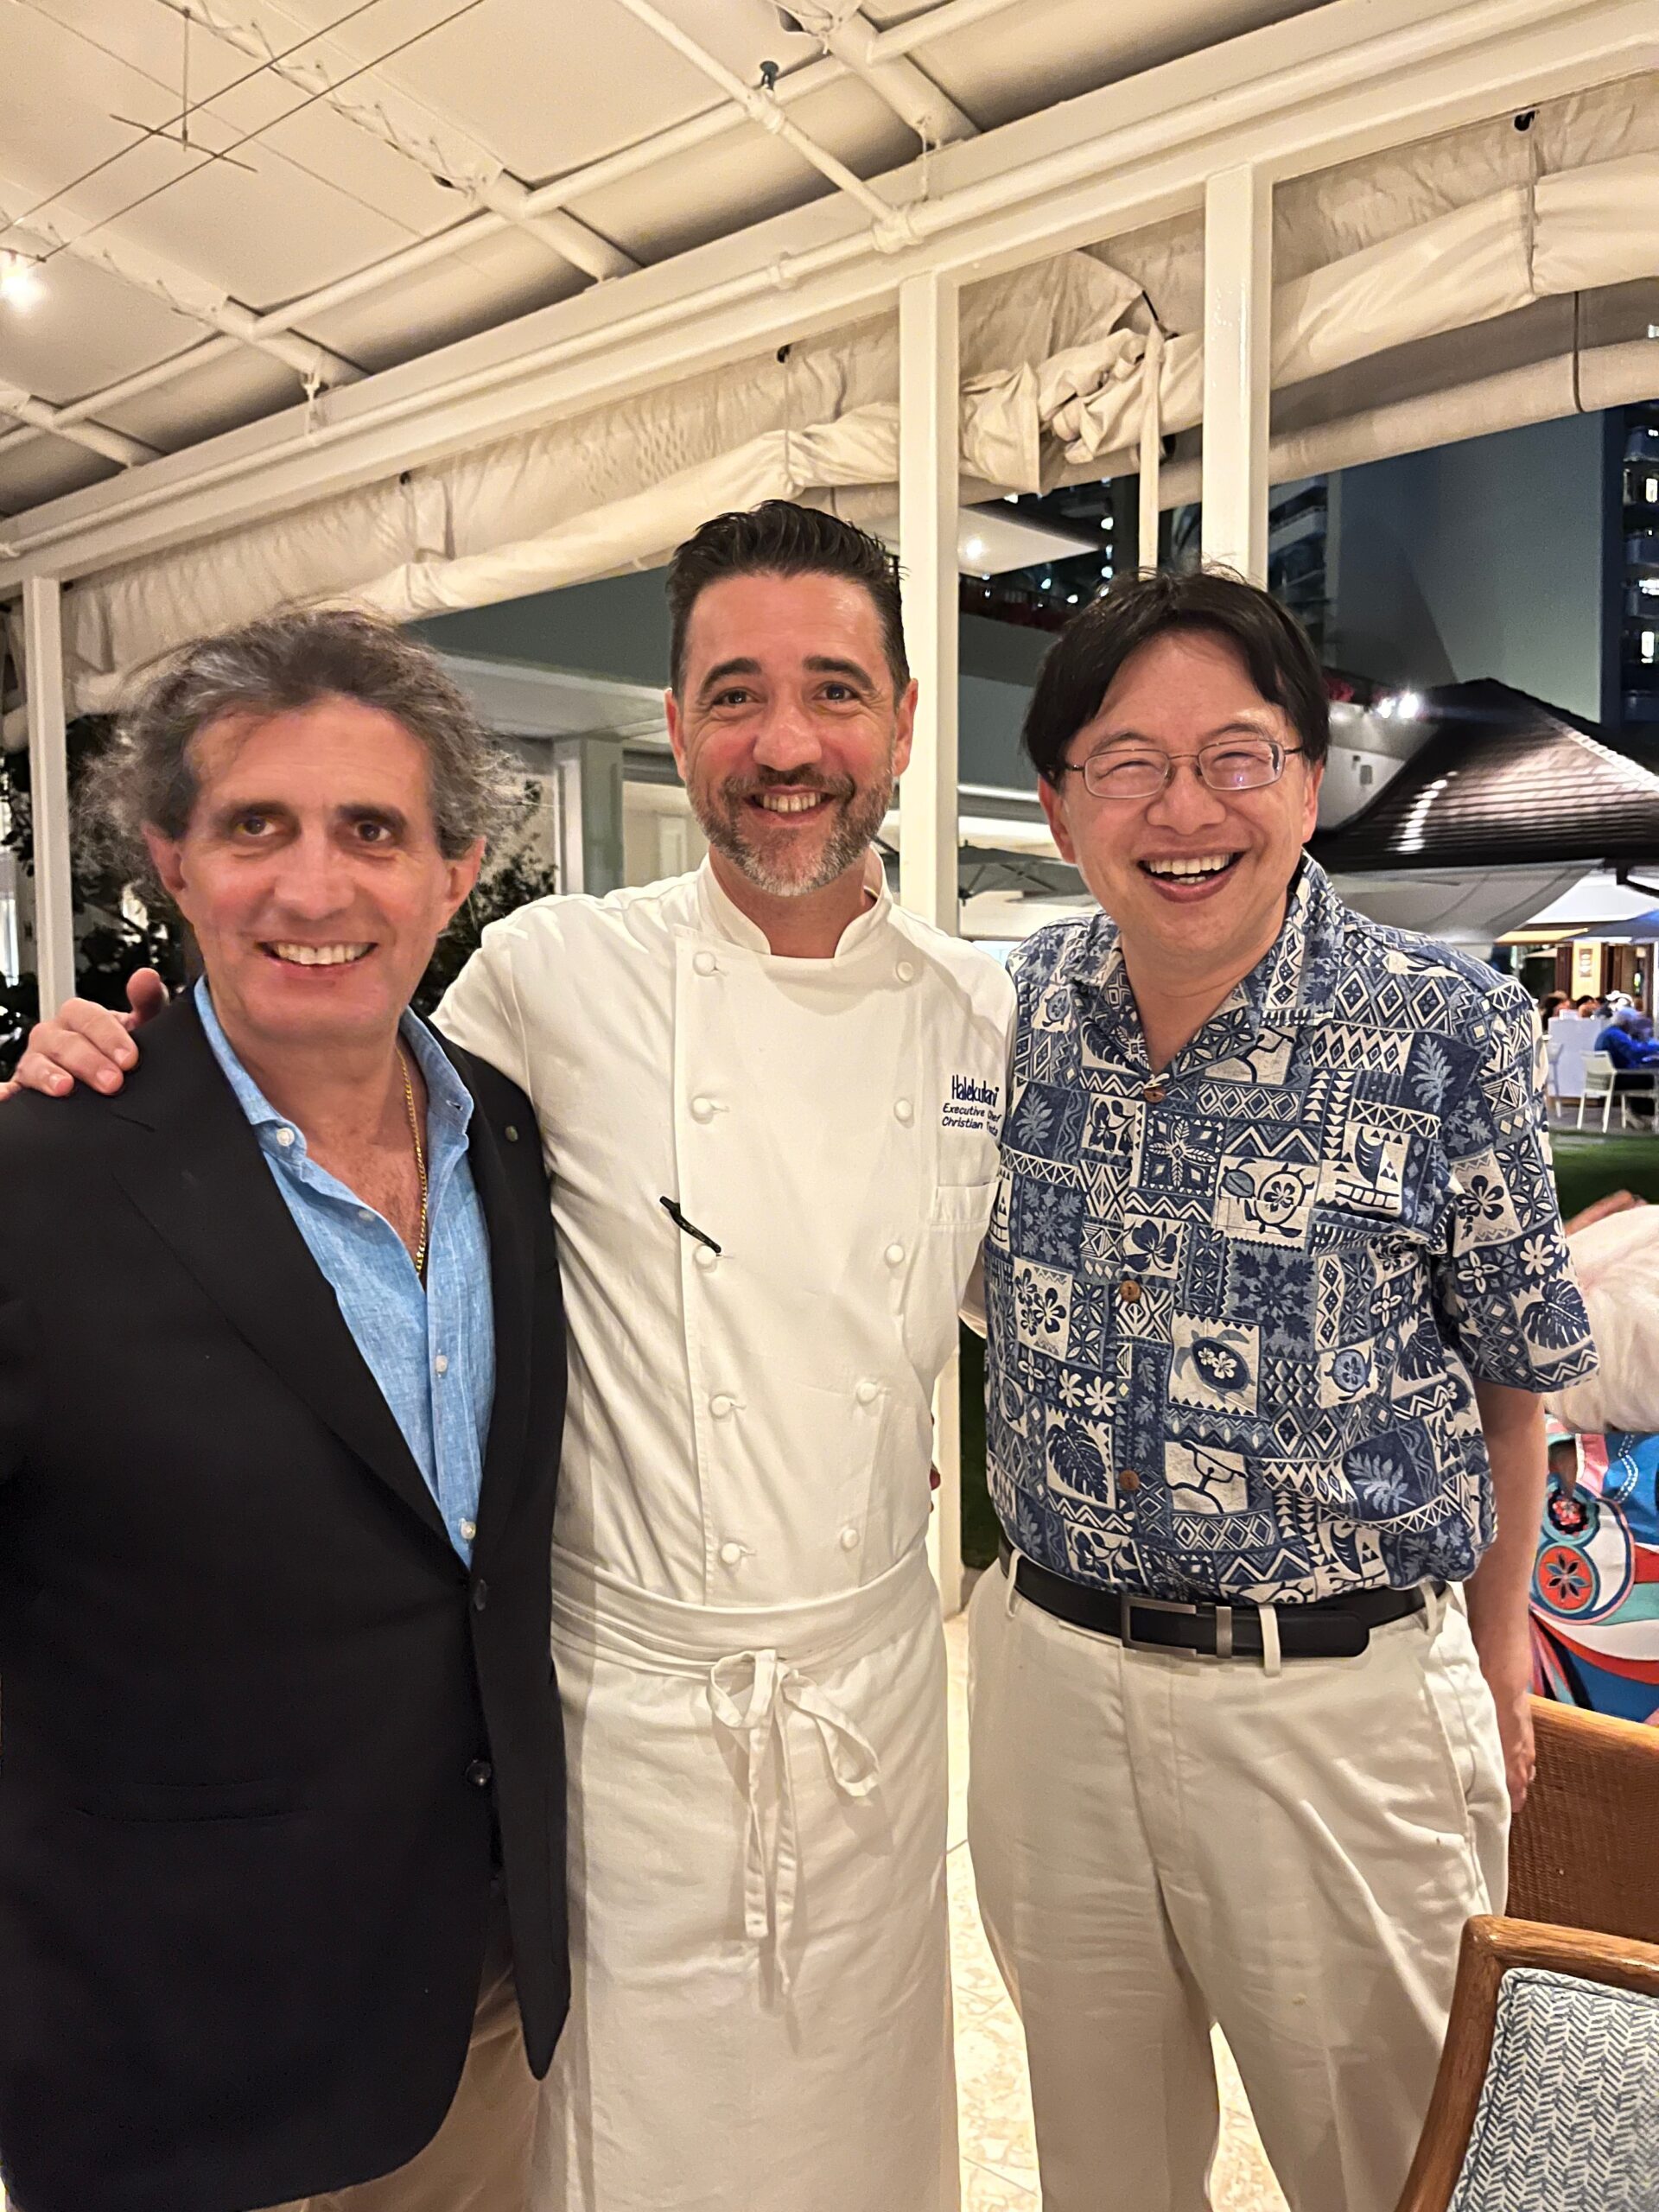 Michele Carbone, Cristian Testa, and Naoto T. Ueno